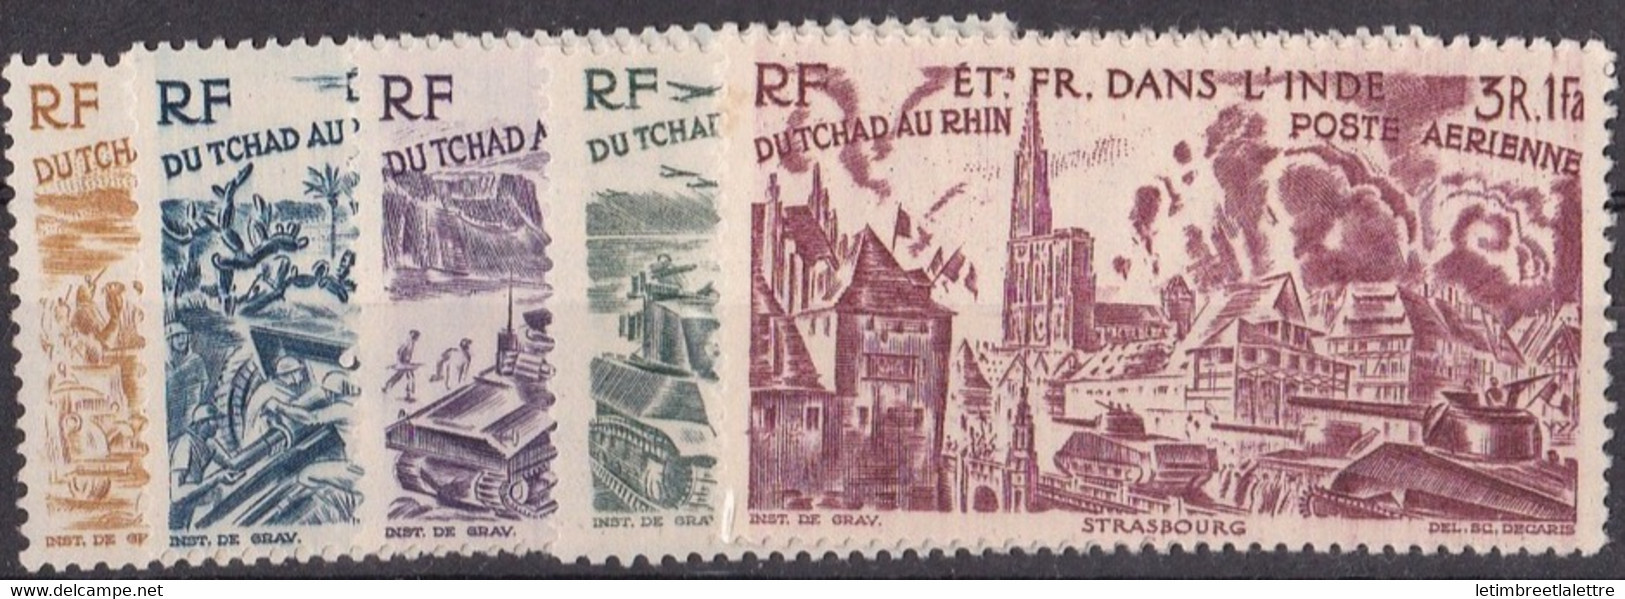 ⭐ Inde - Poste Aérienne - YT N° 11 à 16 ** - Neuf Sans Charnière - 1946 ⭐ - Neufs